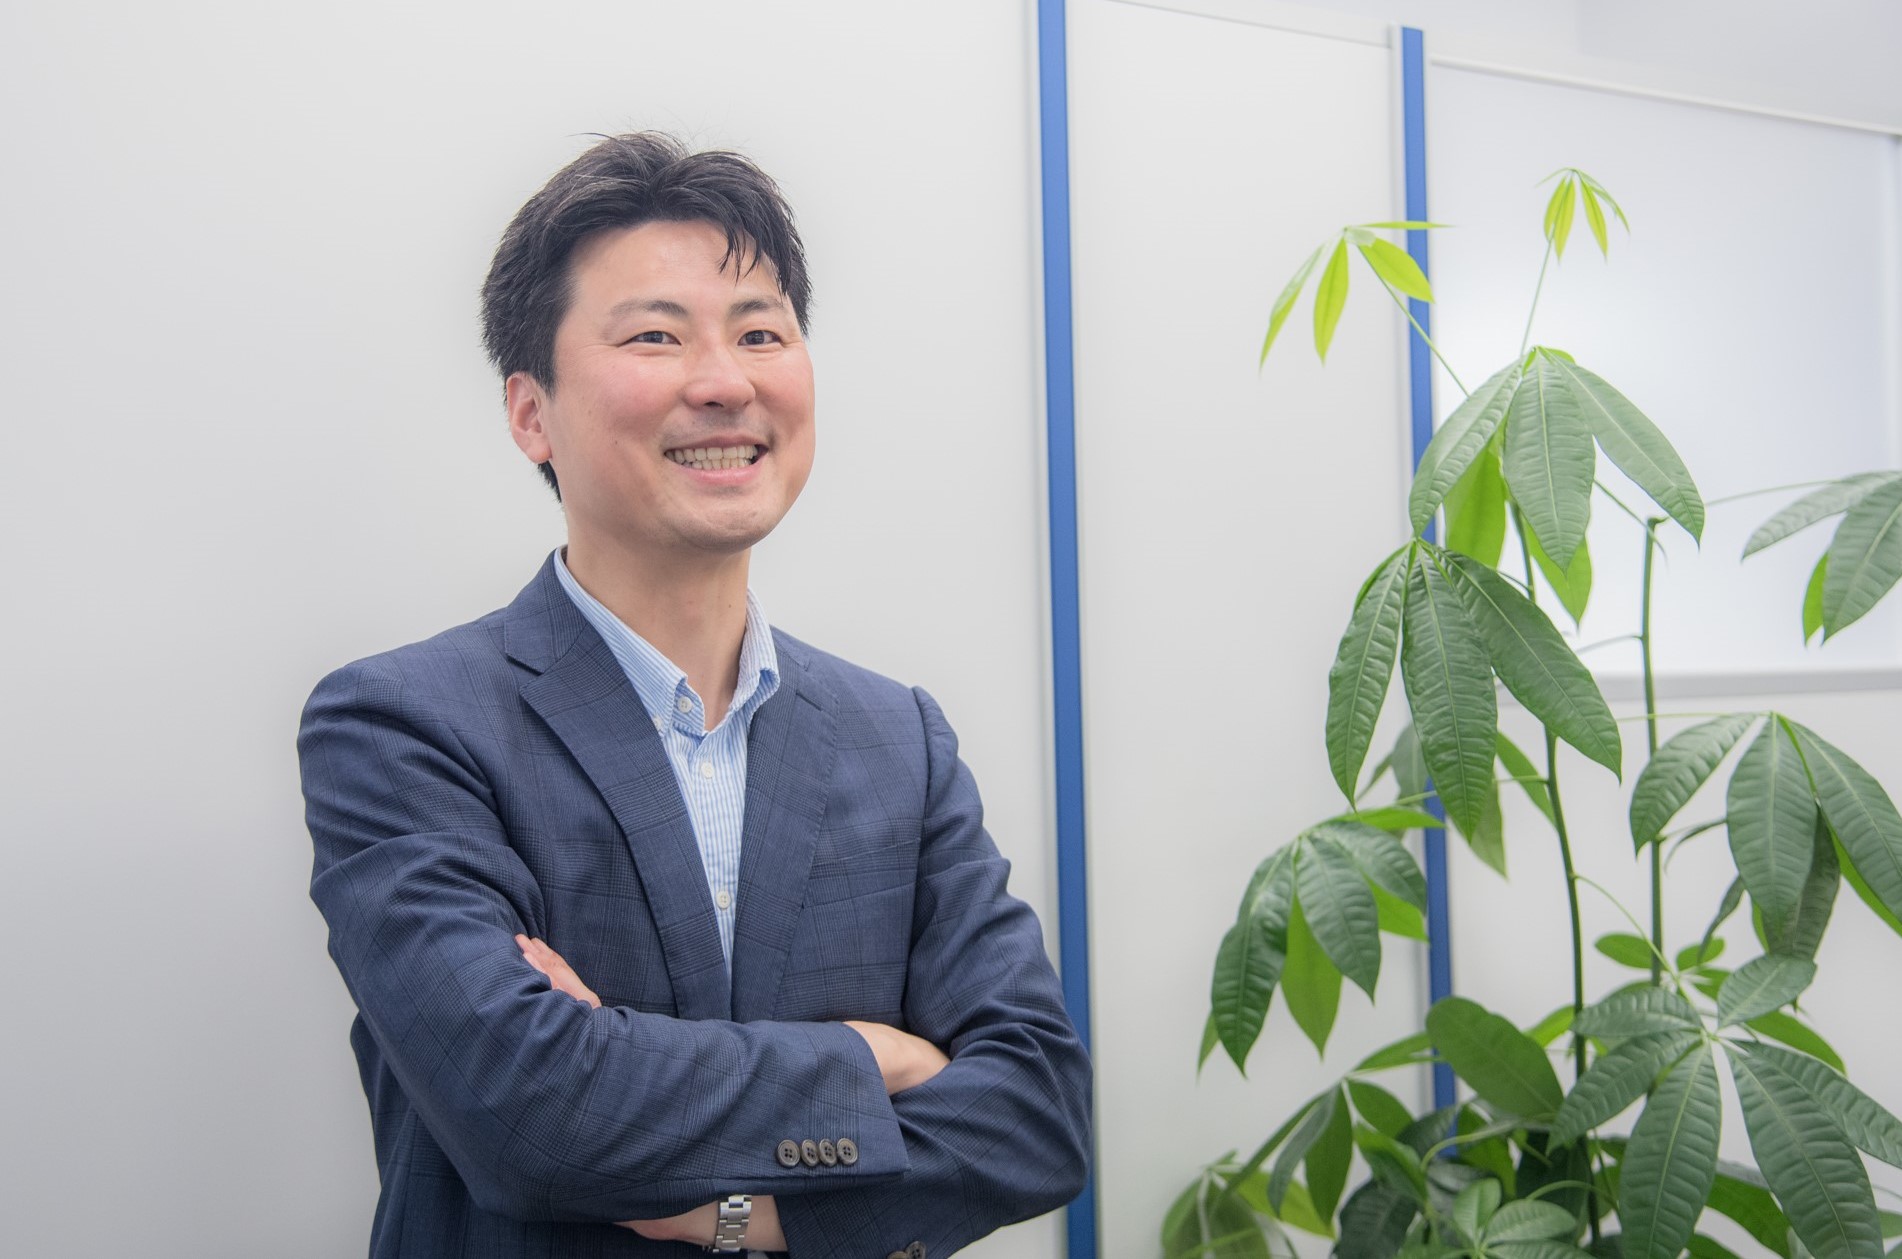 代表取締役　東山 隆幸
前職で共に働いていたメンバーとともに2016年3月に同社を設立。以後成長を牽引している。